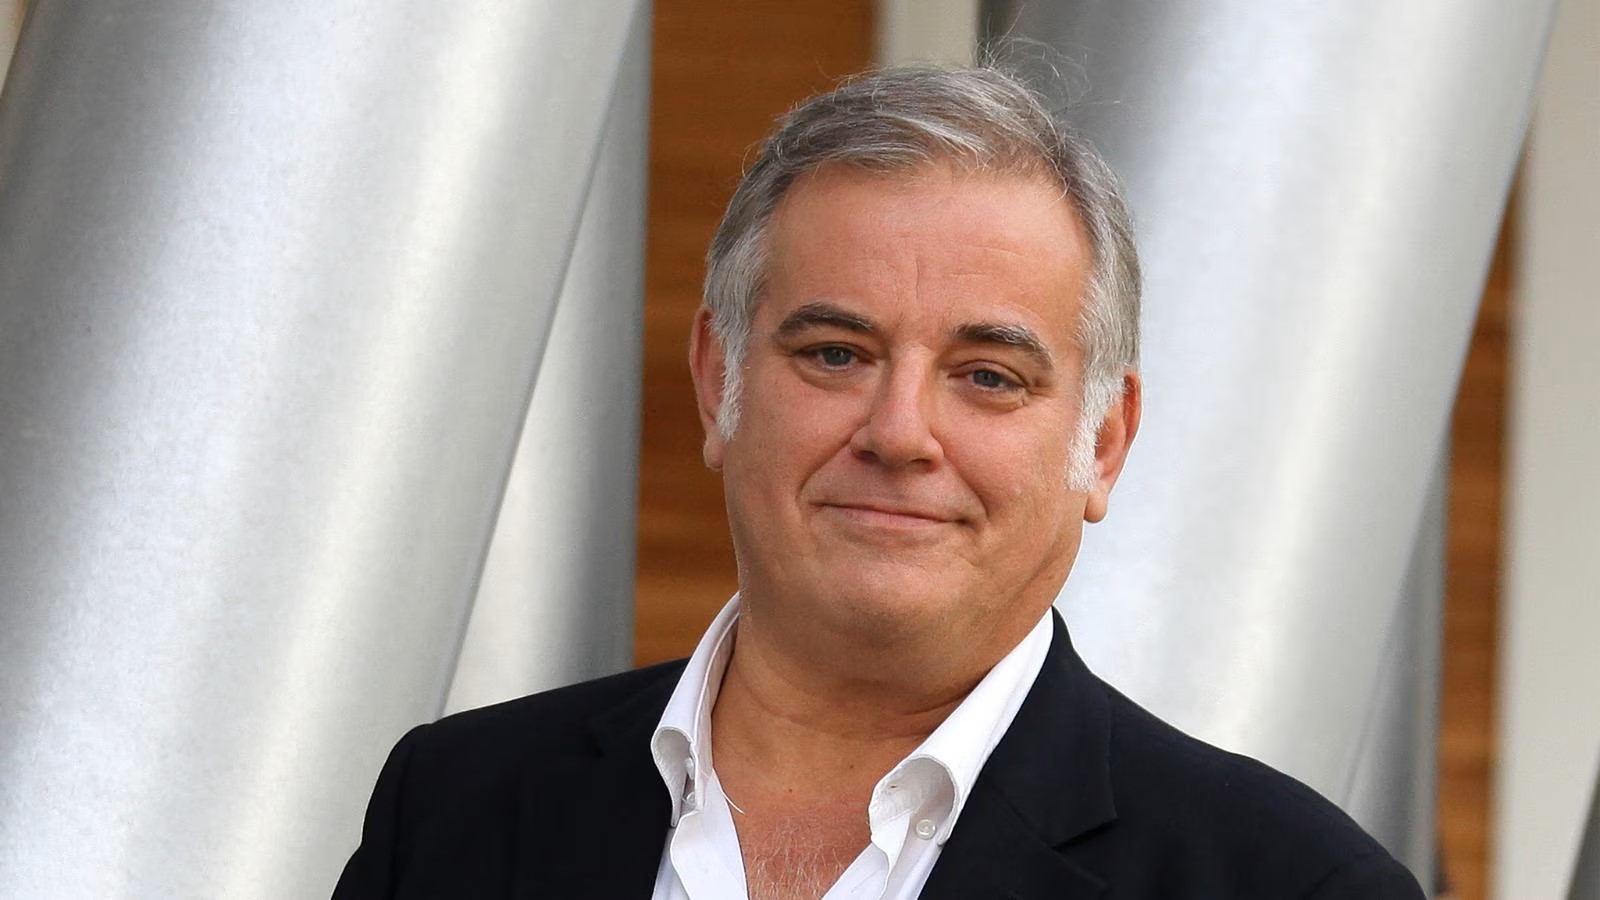 Lutto per la San Marino RTV, muore il direttore Di Meo Agenzia di stampa  Italpress - Italpress